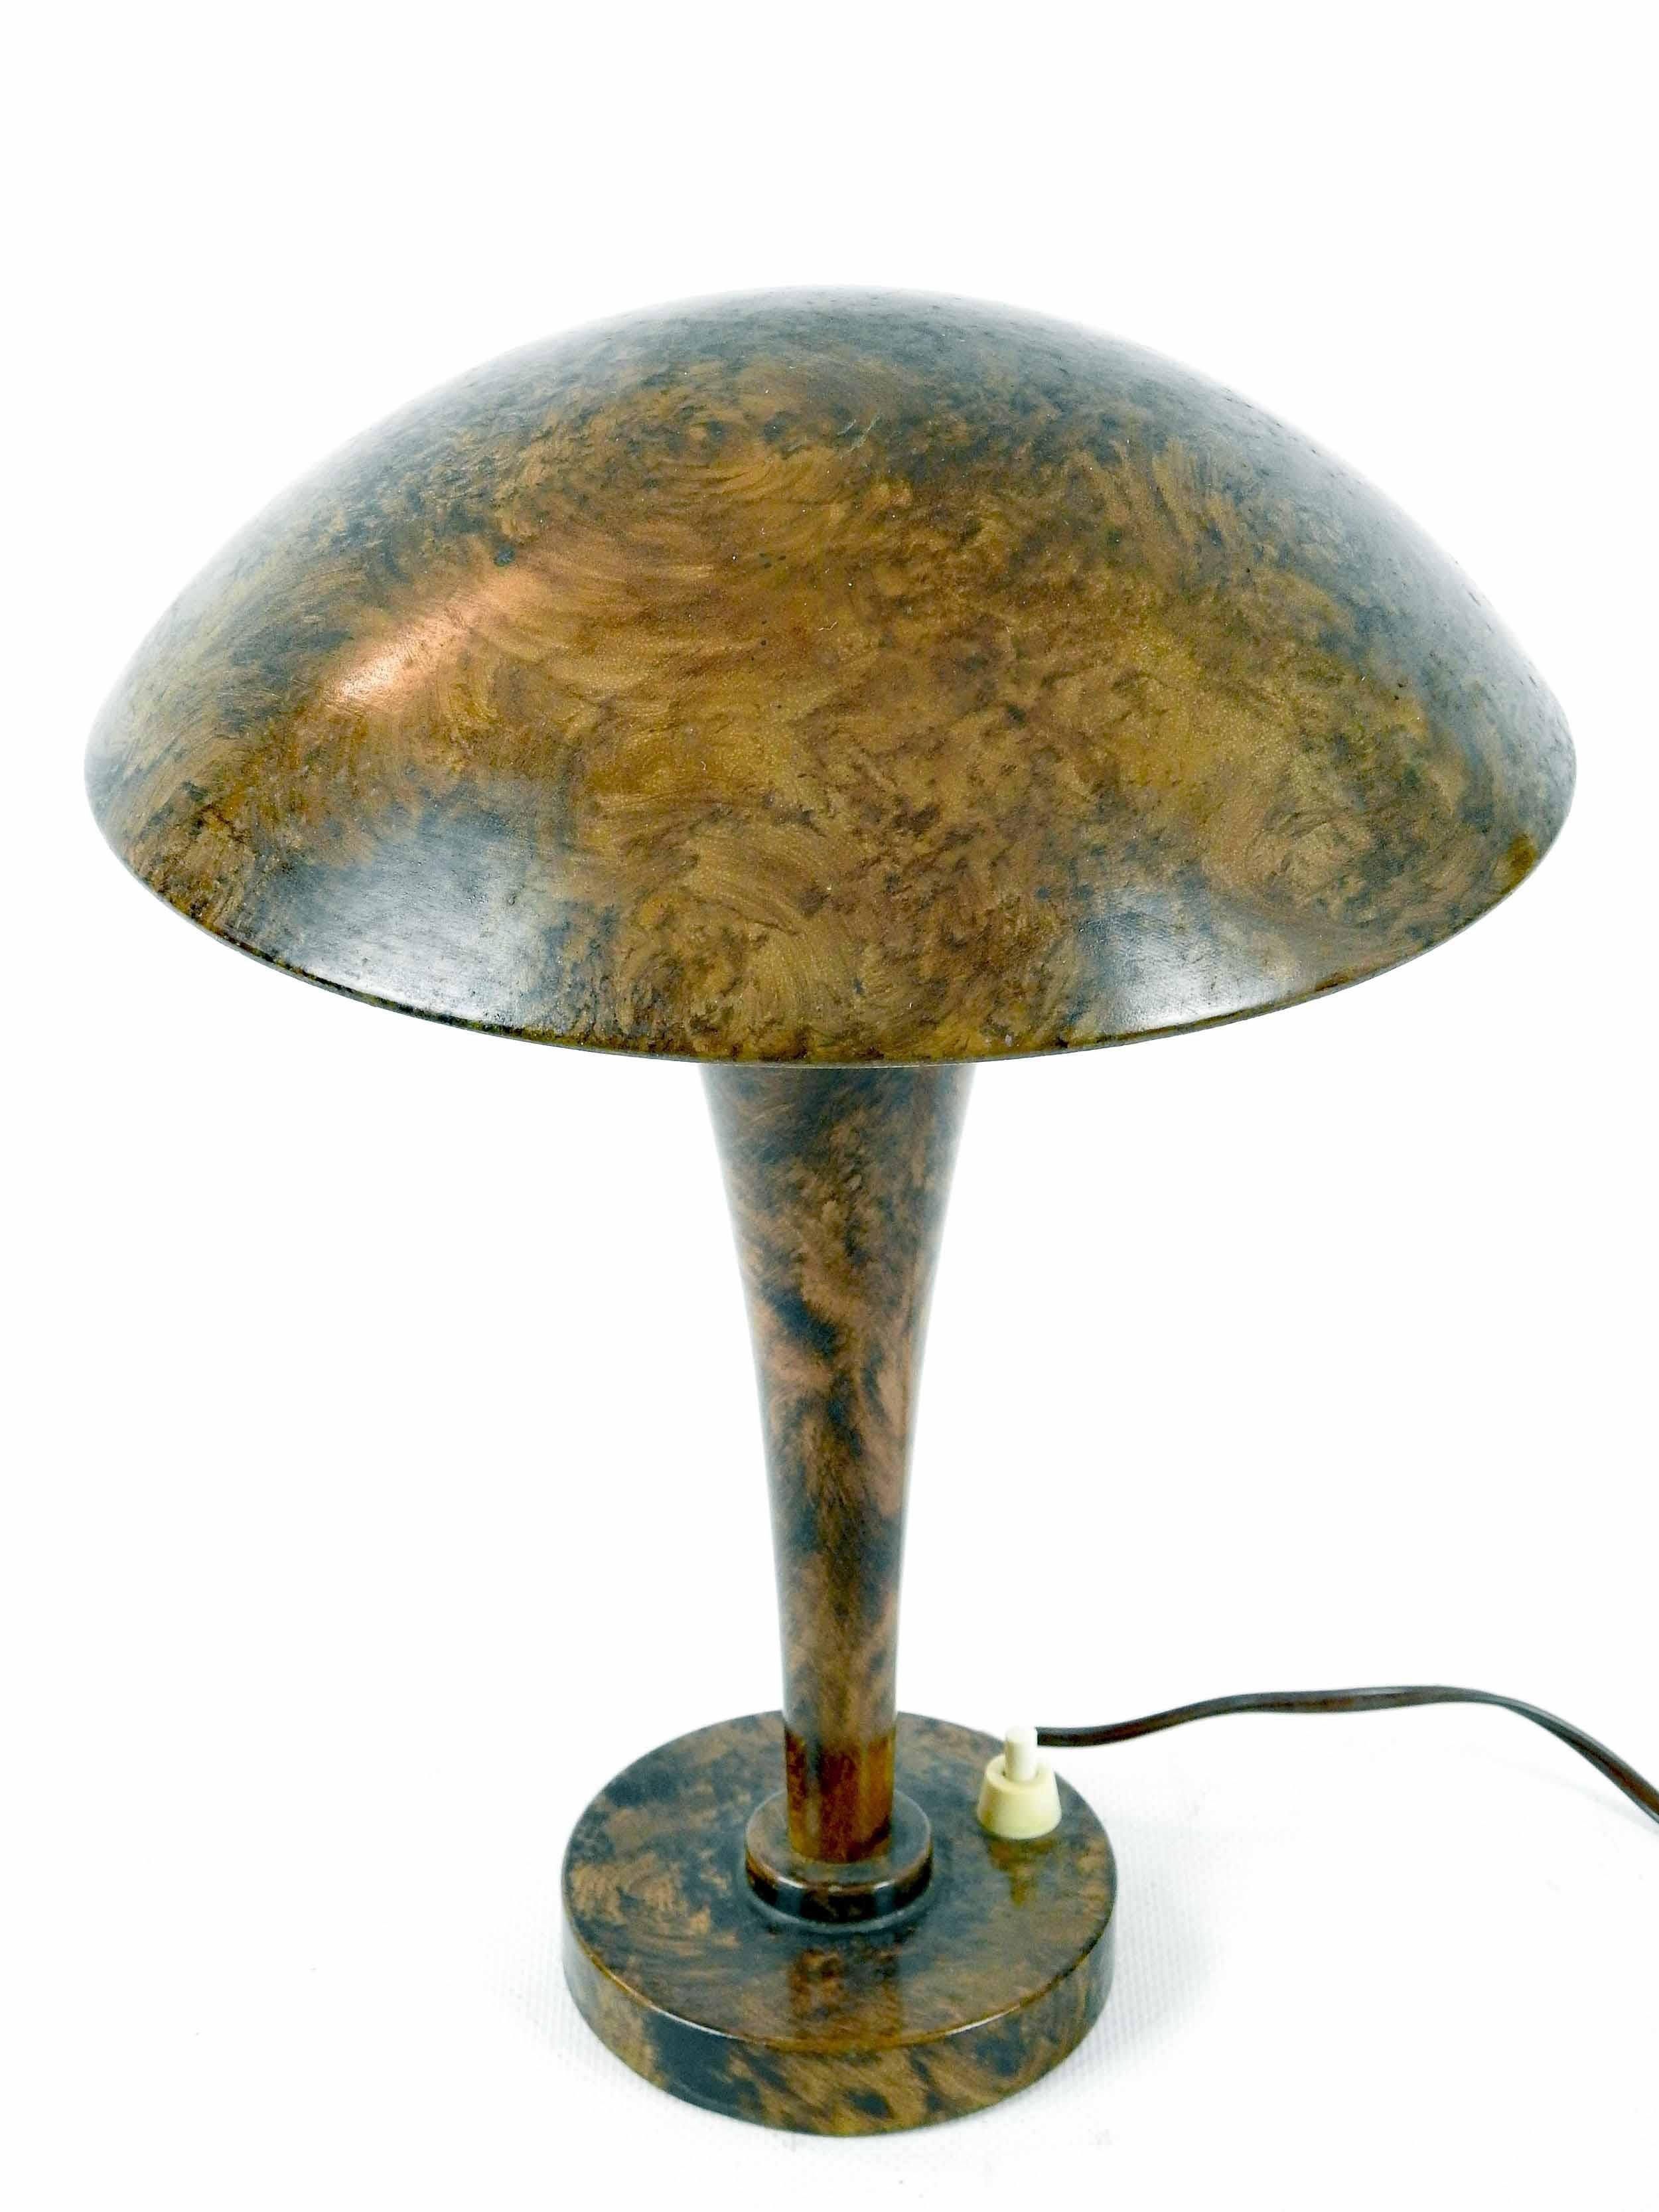 Jean PERZEL (1892-1986) pour Claude Lumière.
Lampe de bureau en métal laqué de style ronce, pieds tubulaires évasés et base circulaire, verre Holophane surmonté d'un abat-jour.
Marqué sous la base.
